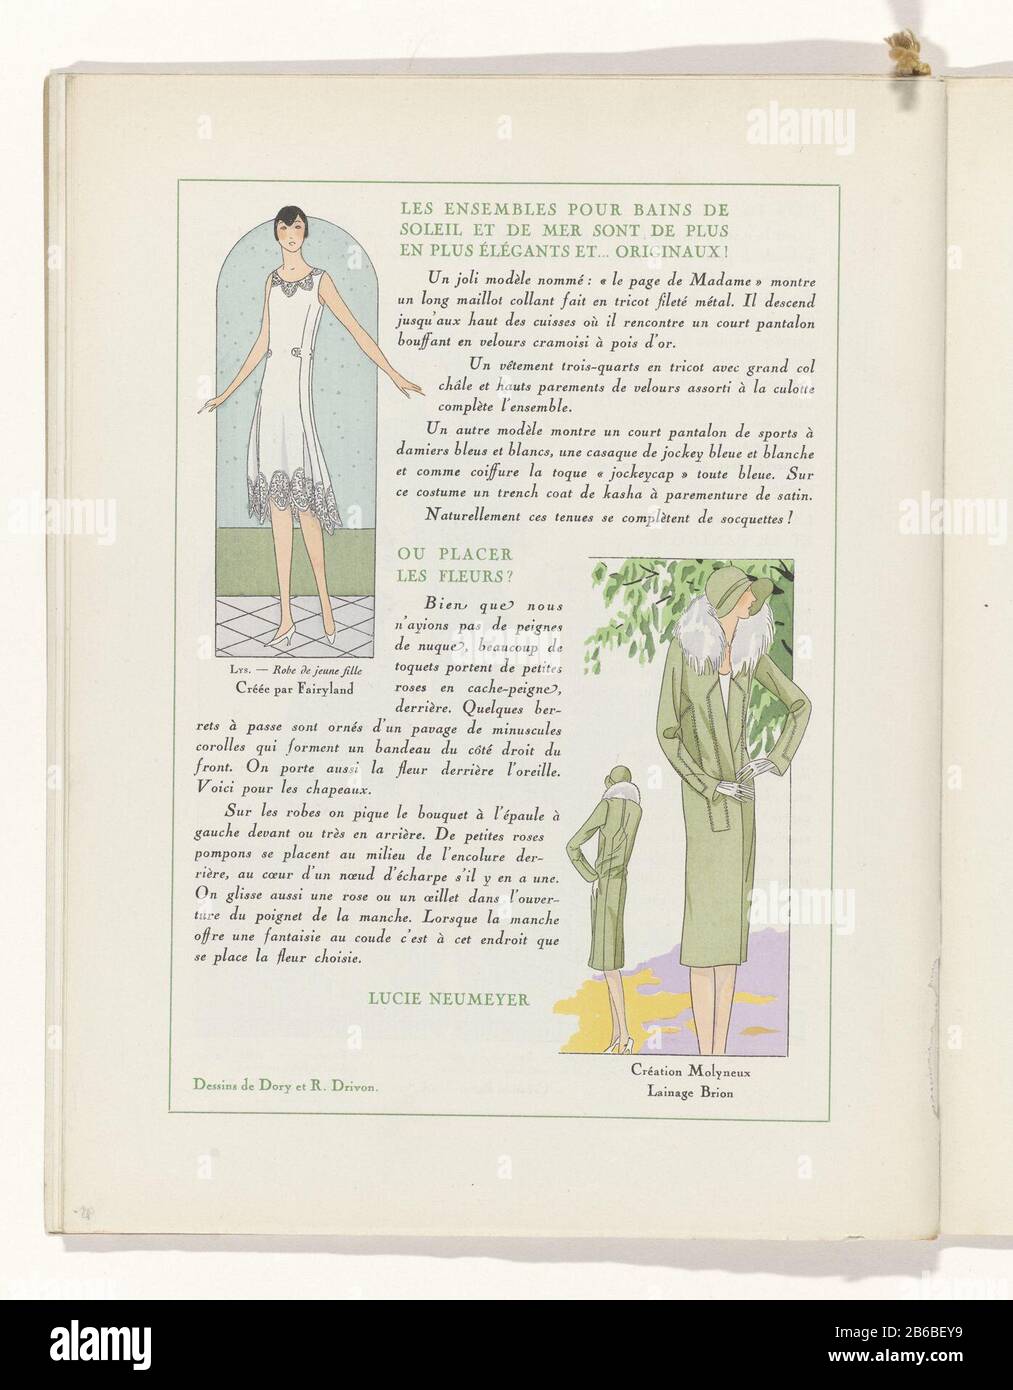 Texto de la ropa de verano. Ilustraciones: Superior izquierda: Vestido  blanco para una mujer joven, diseñado por Fairyland. Abajo a la derecha:  Manto verde de lana con cuello de piel, Molyneux. Página